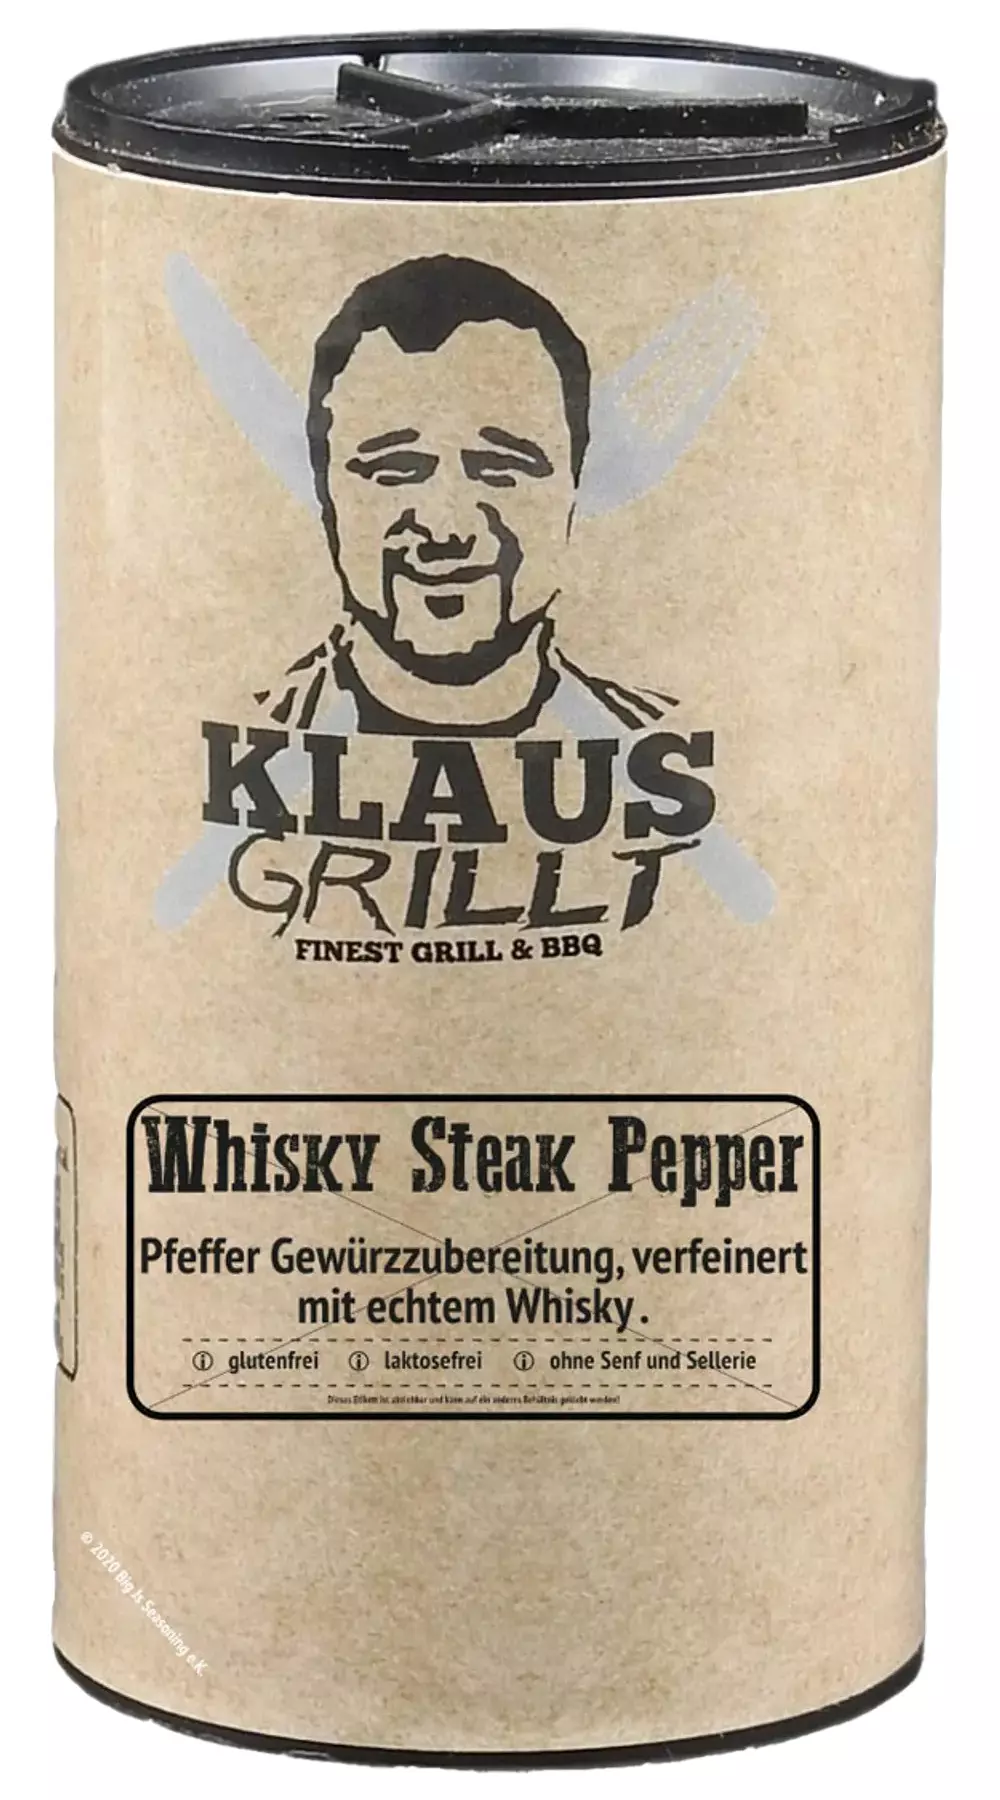 Klaus grillt, Whisky Steak Pfeffer, 100g Streuer